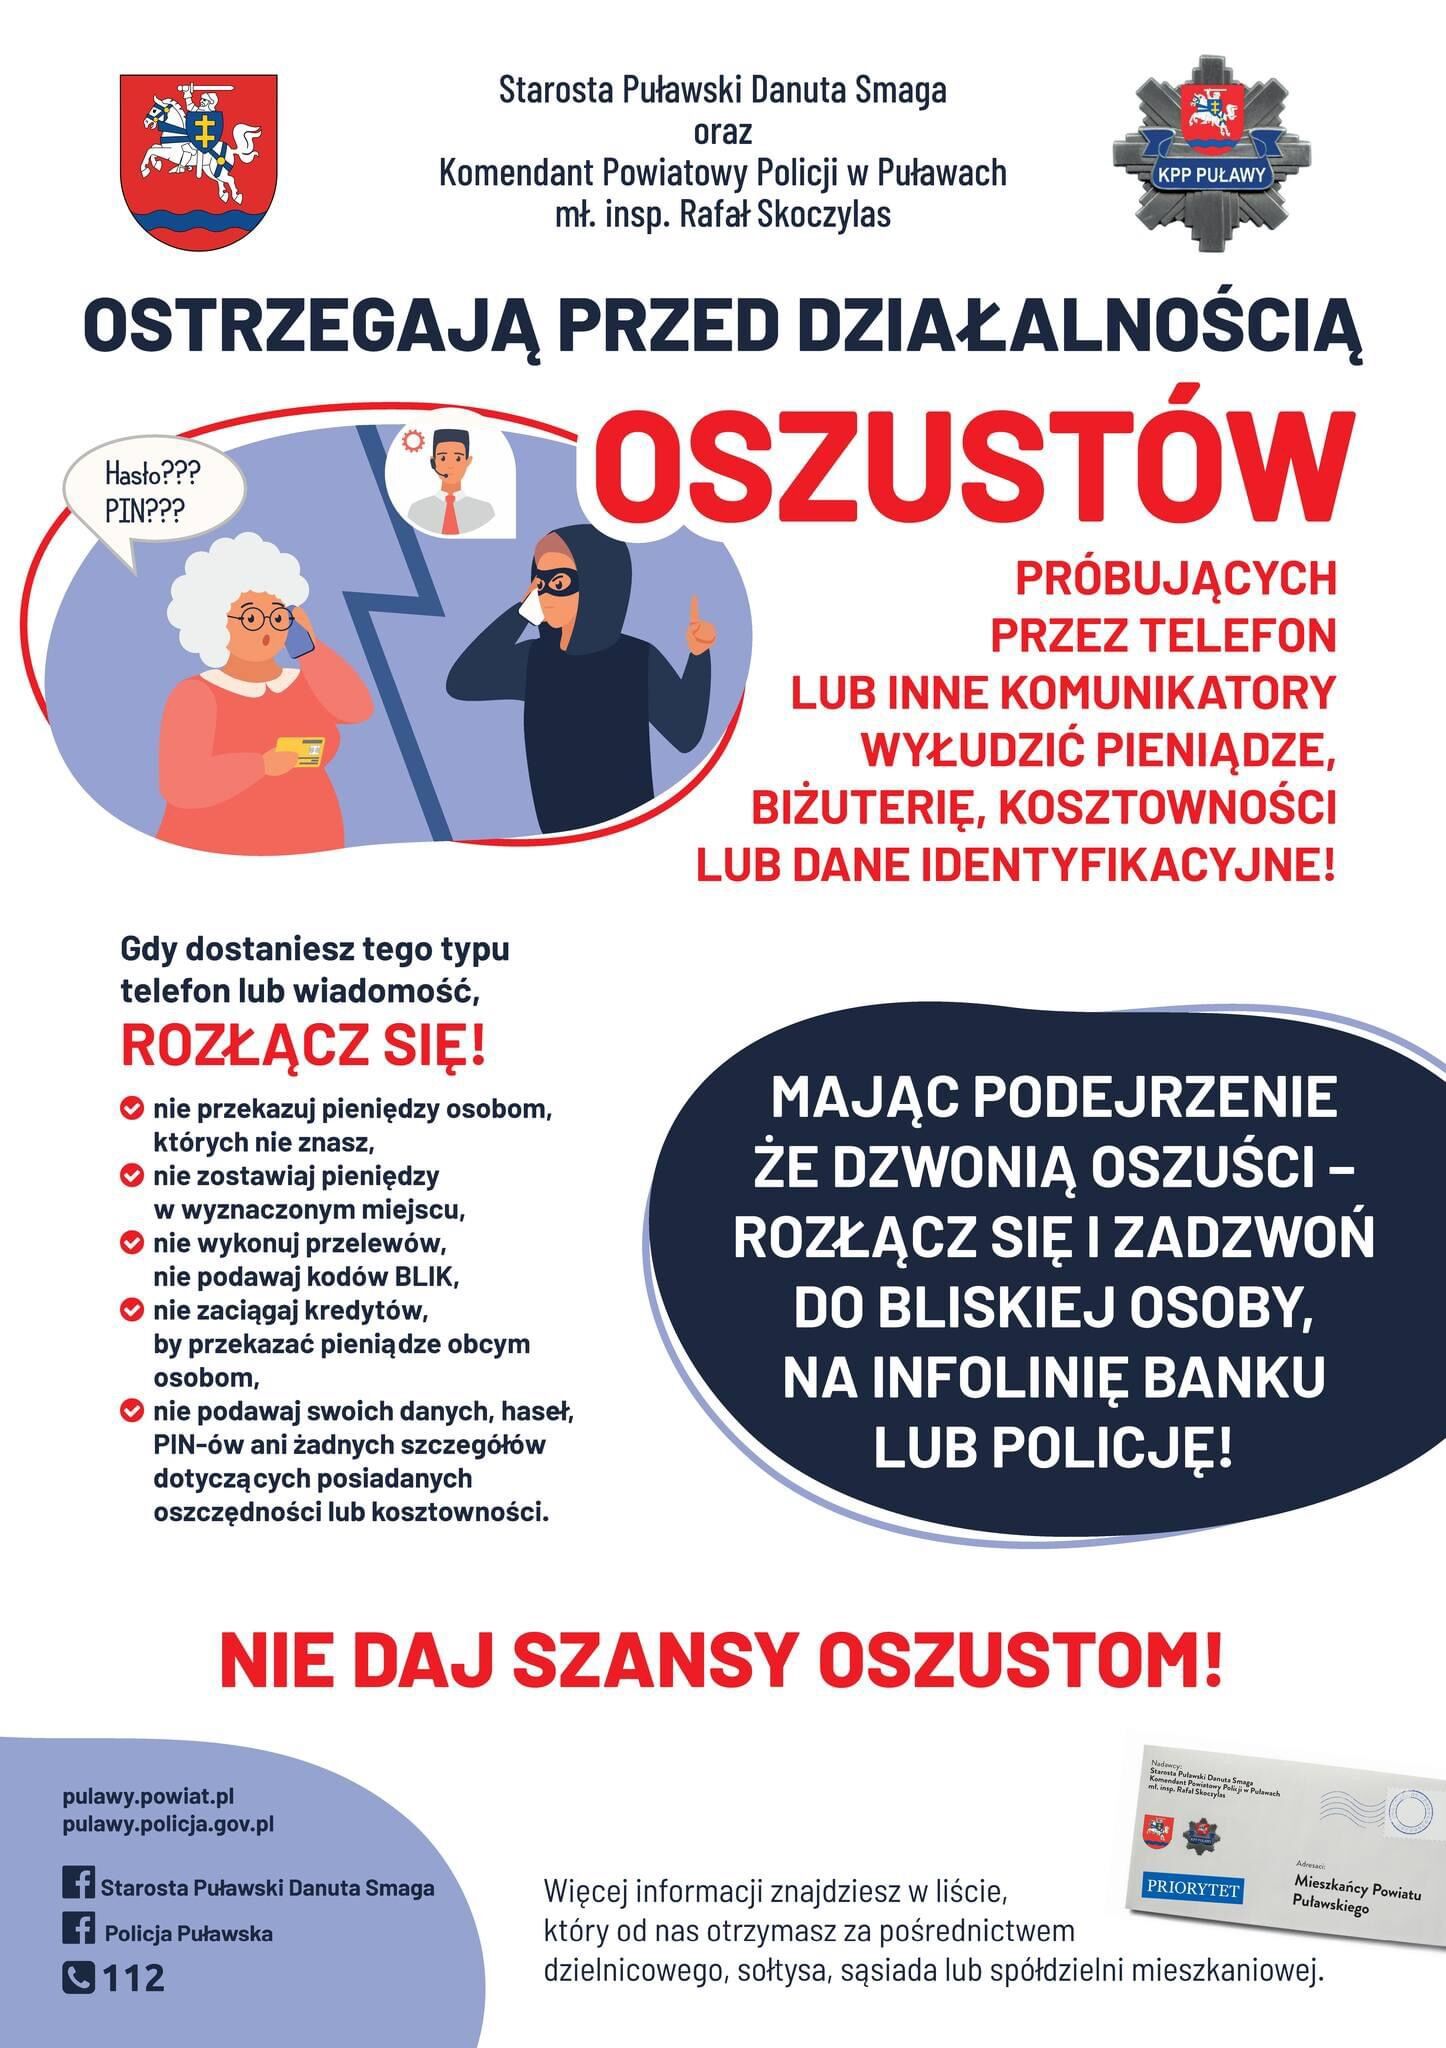 Opis alternatywny: Plakat ostrzegawczy w języku polskim o oszustwach telefonicznych. Zawiera rysunkową postać policjanta, tekst oraz grafiki symbolizujące oszustwa, np. fałszywe telefony, sos, policję.